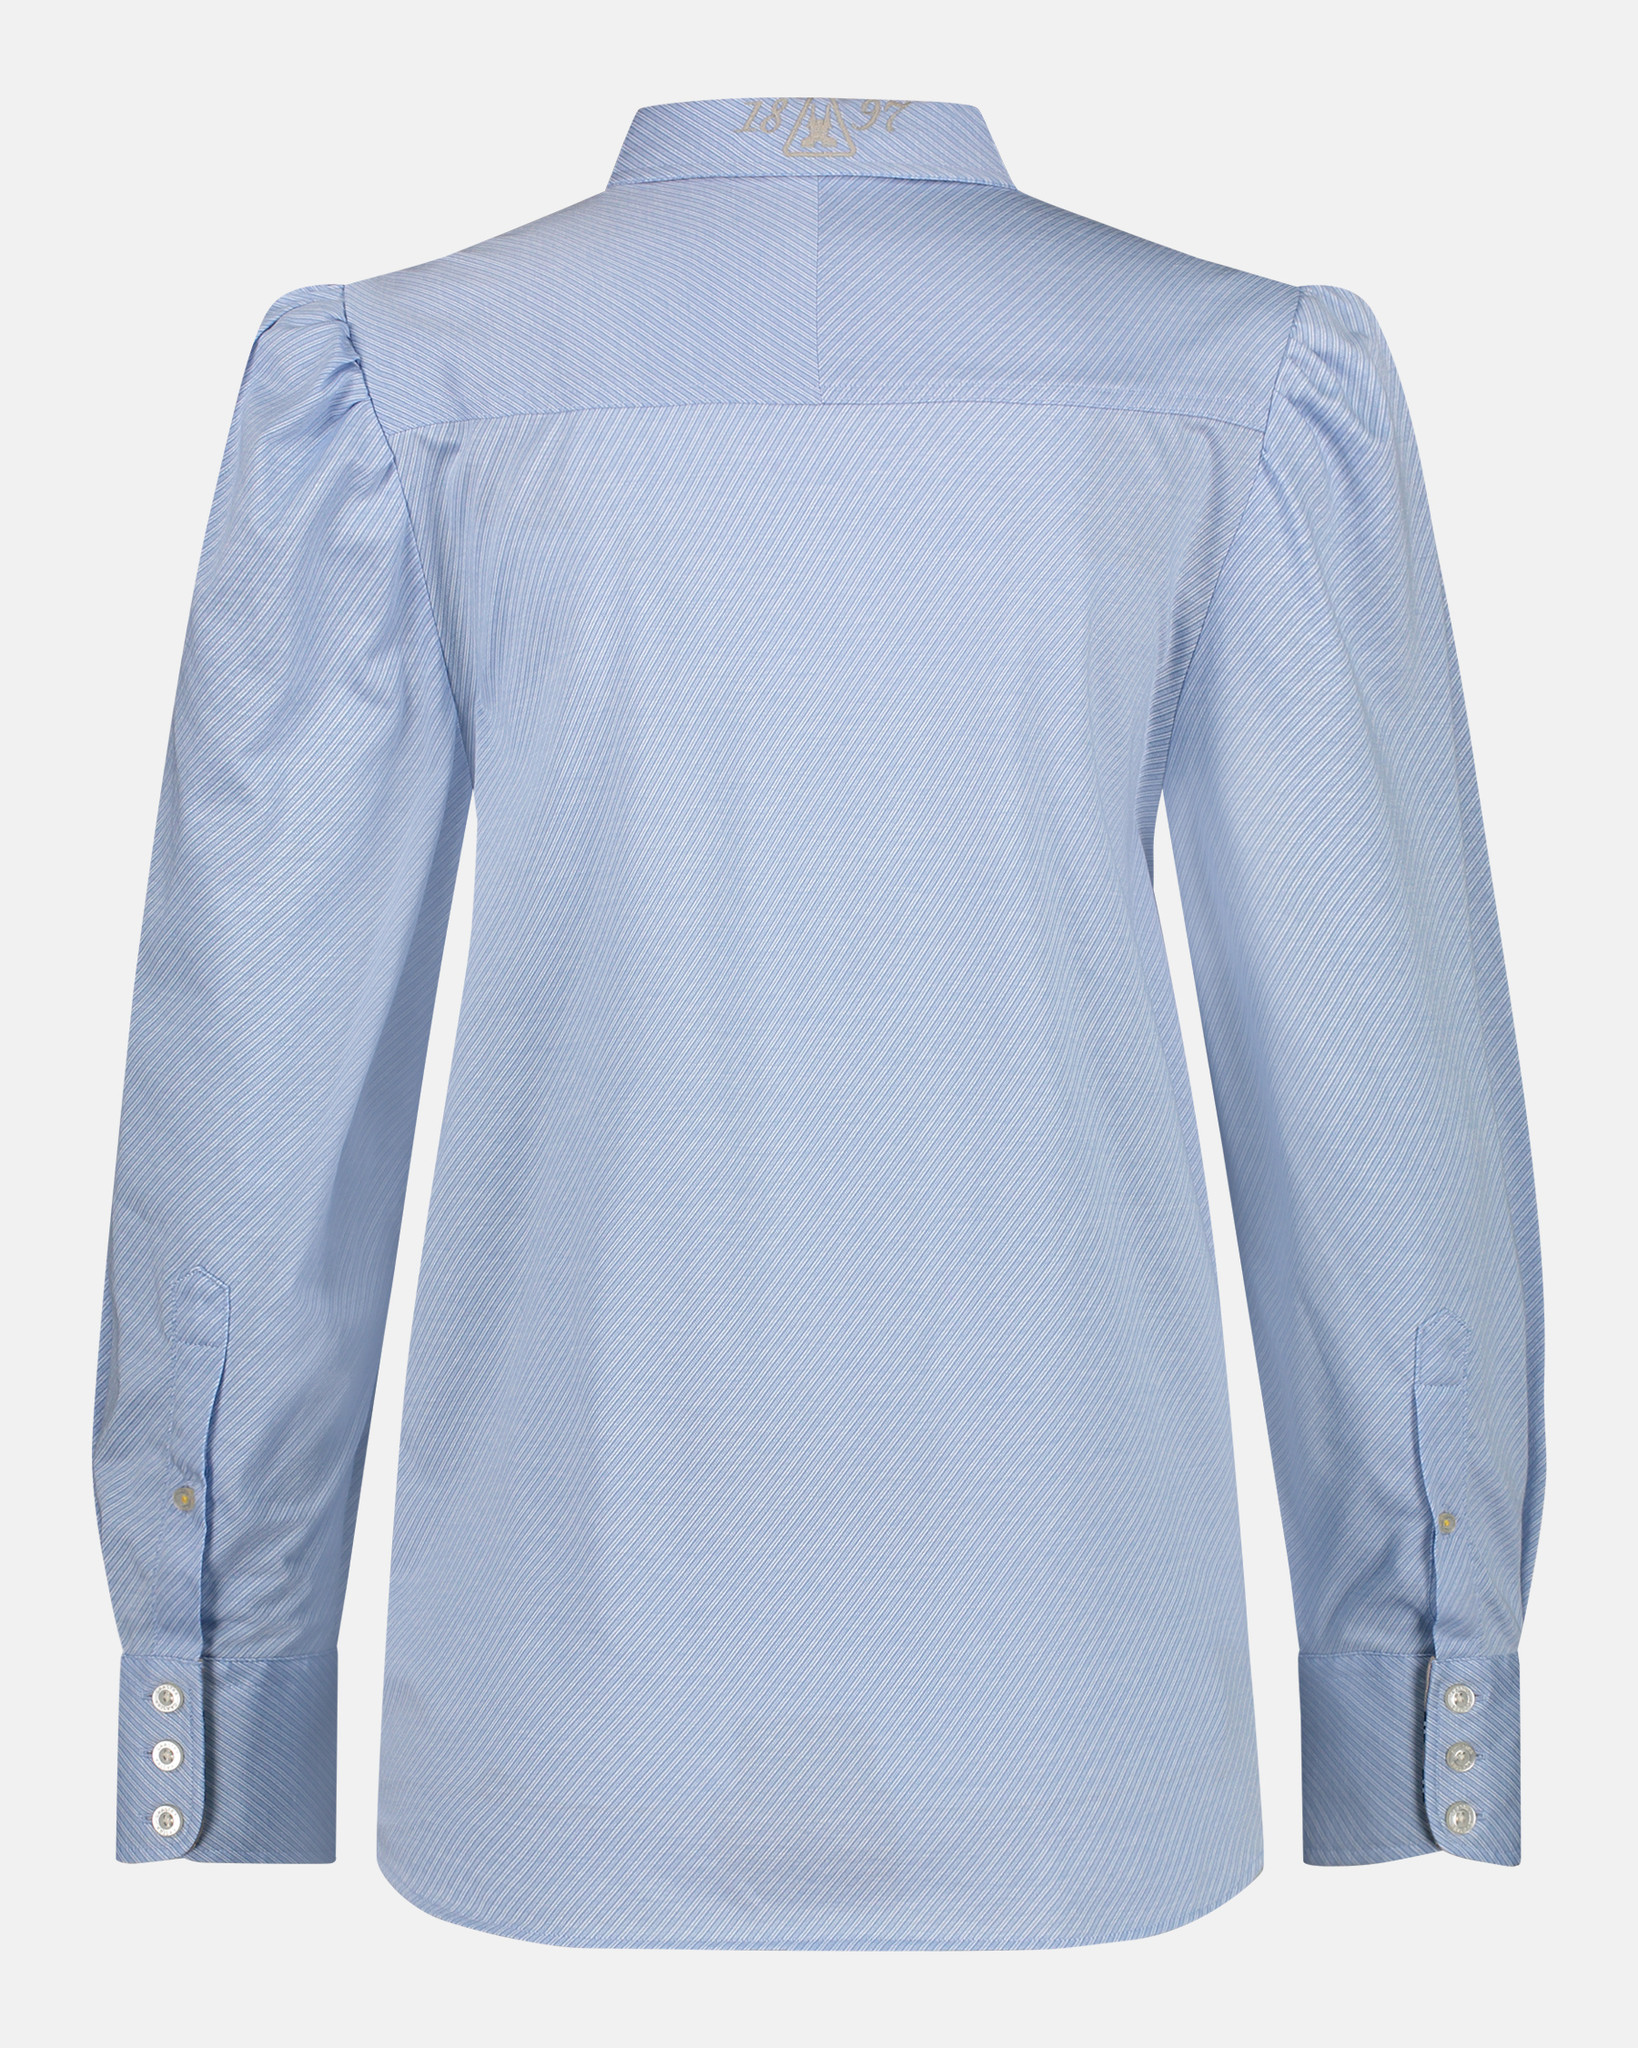 The stylish Mustique shirt Delphinium Blue